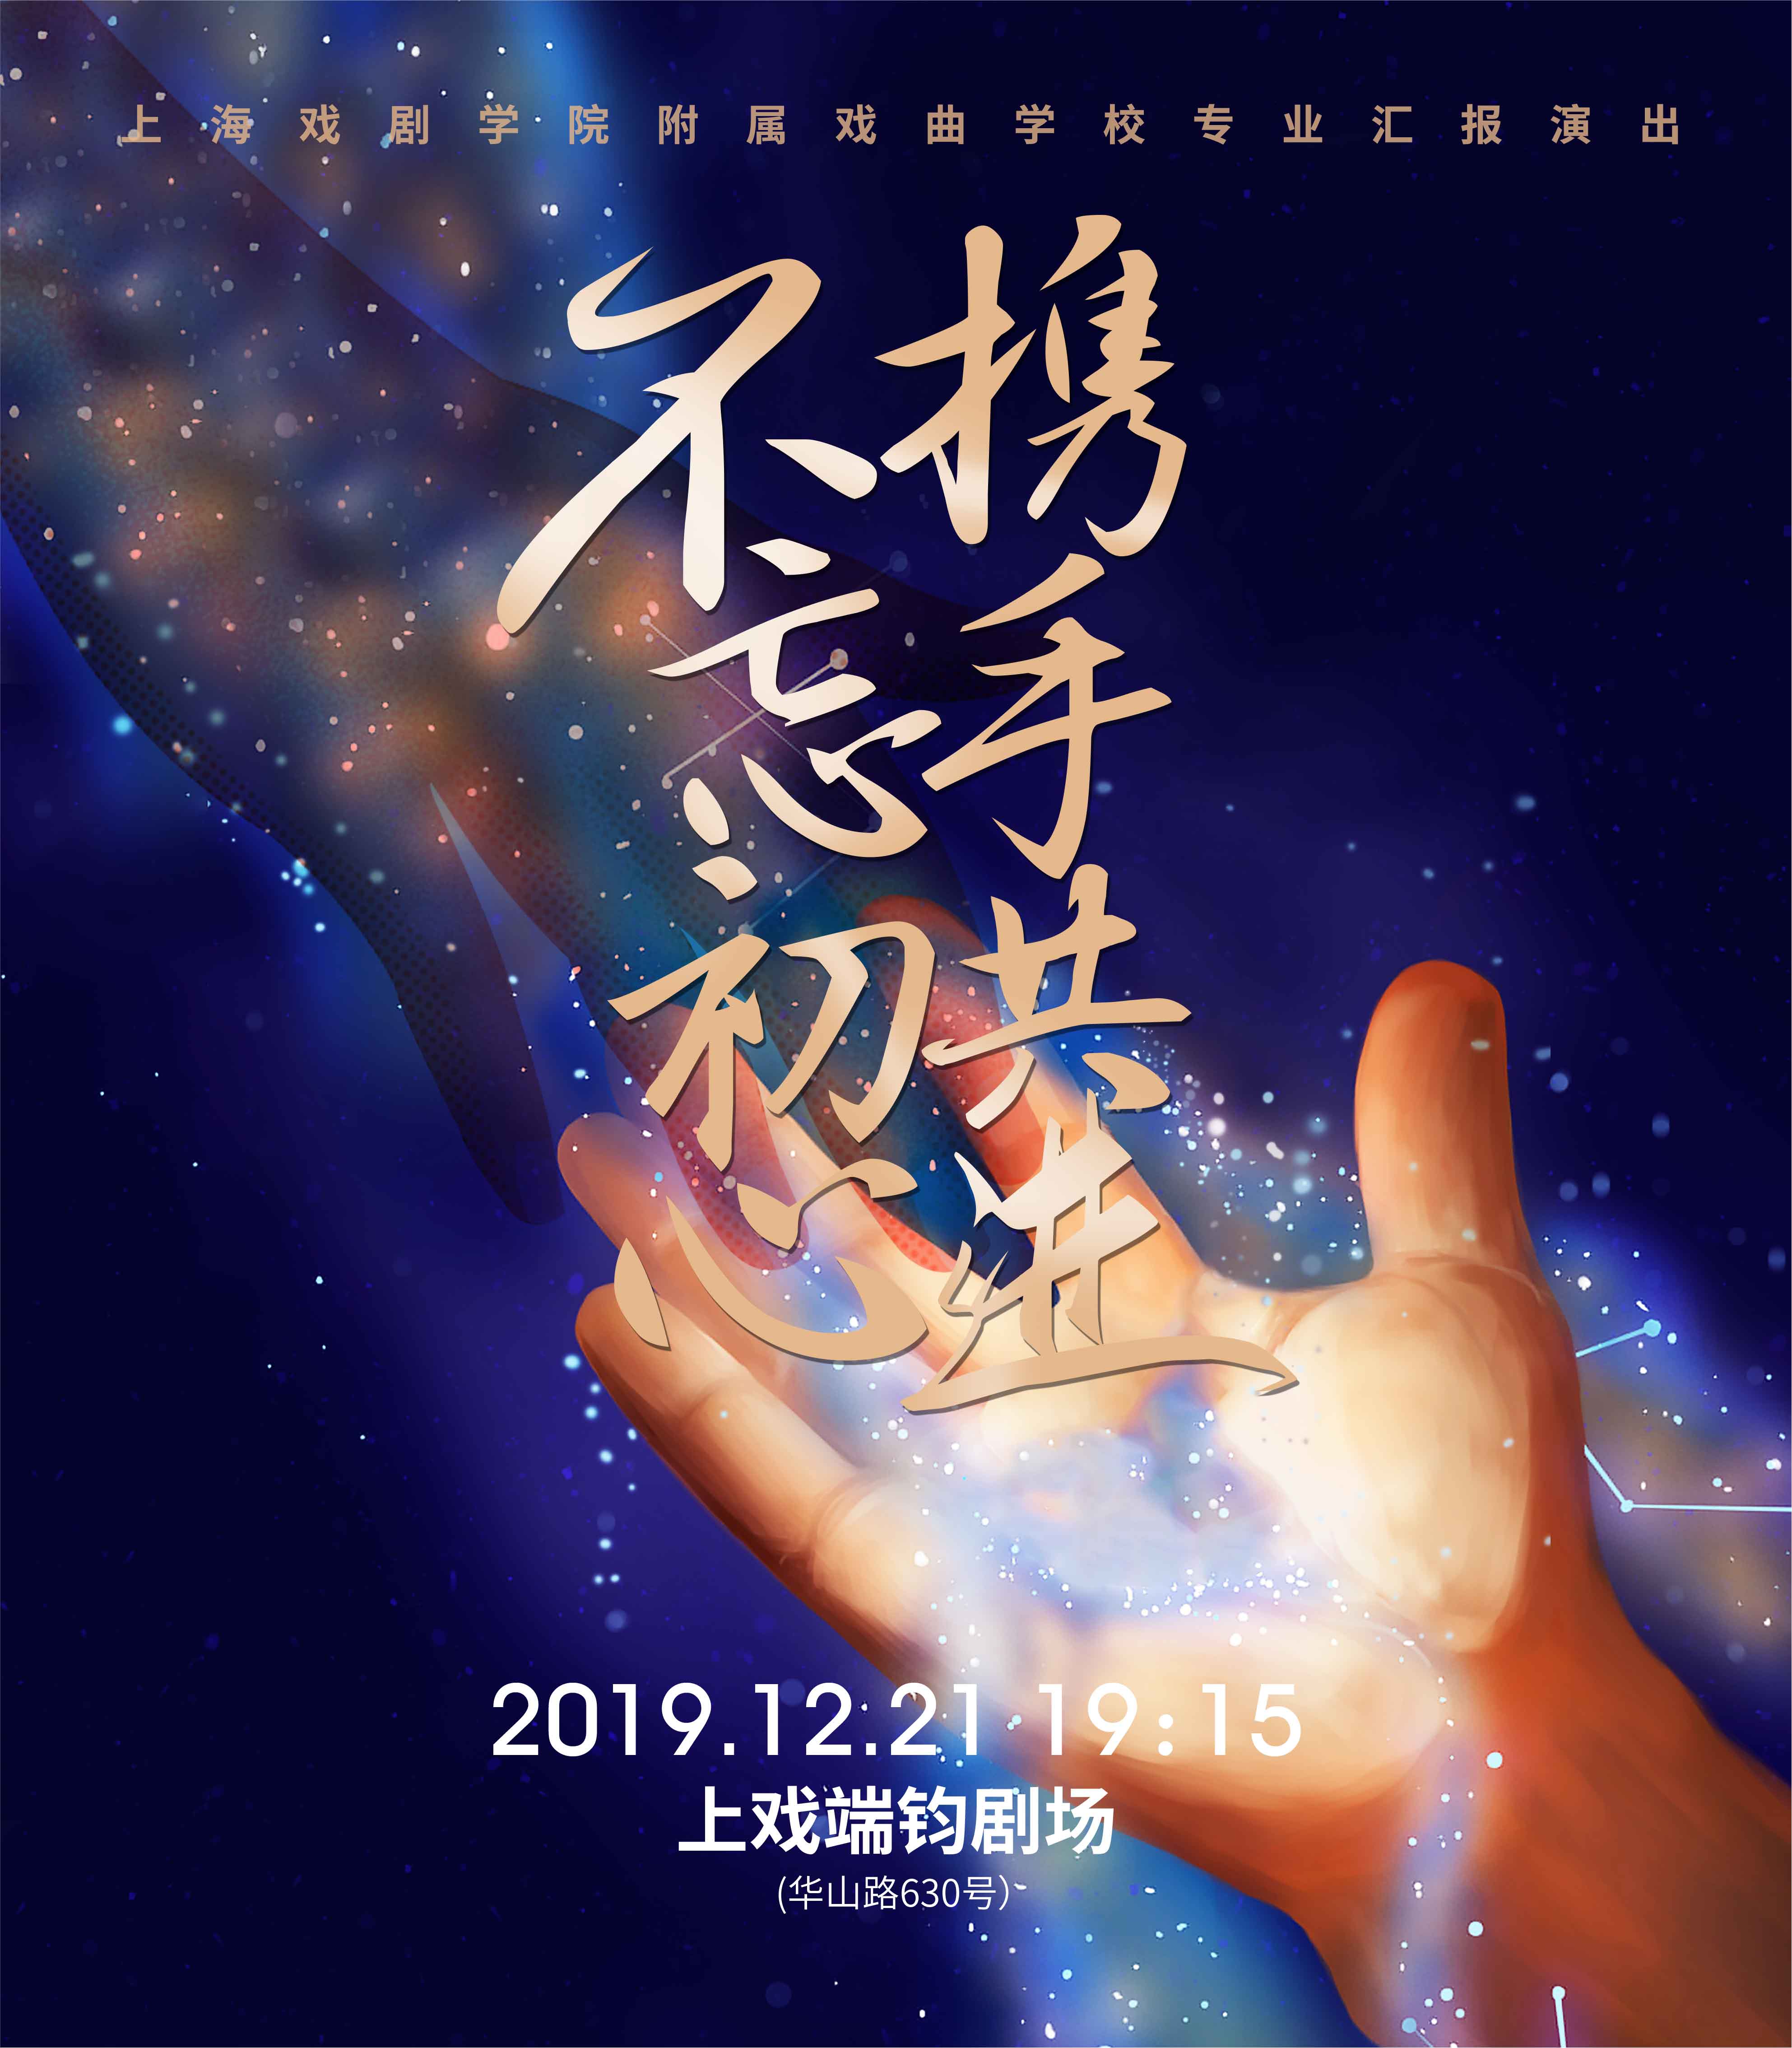 上海戏剧学院2020级音乐剧表演专业新生合影 @上戏20音乐剧